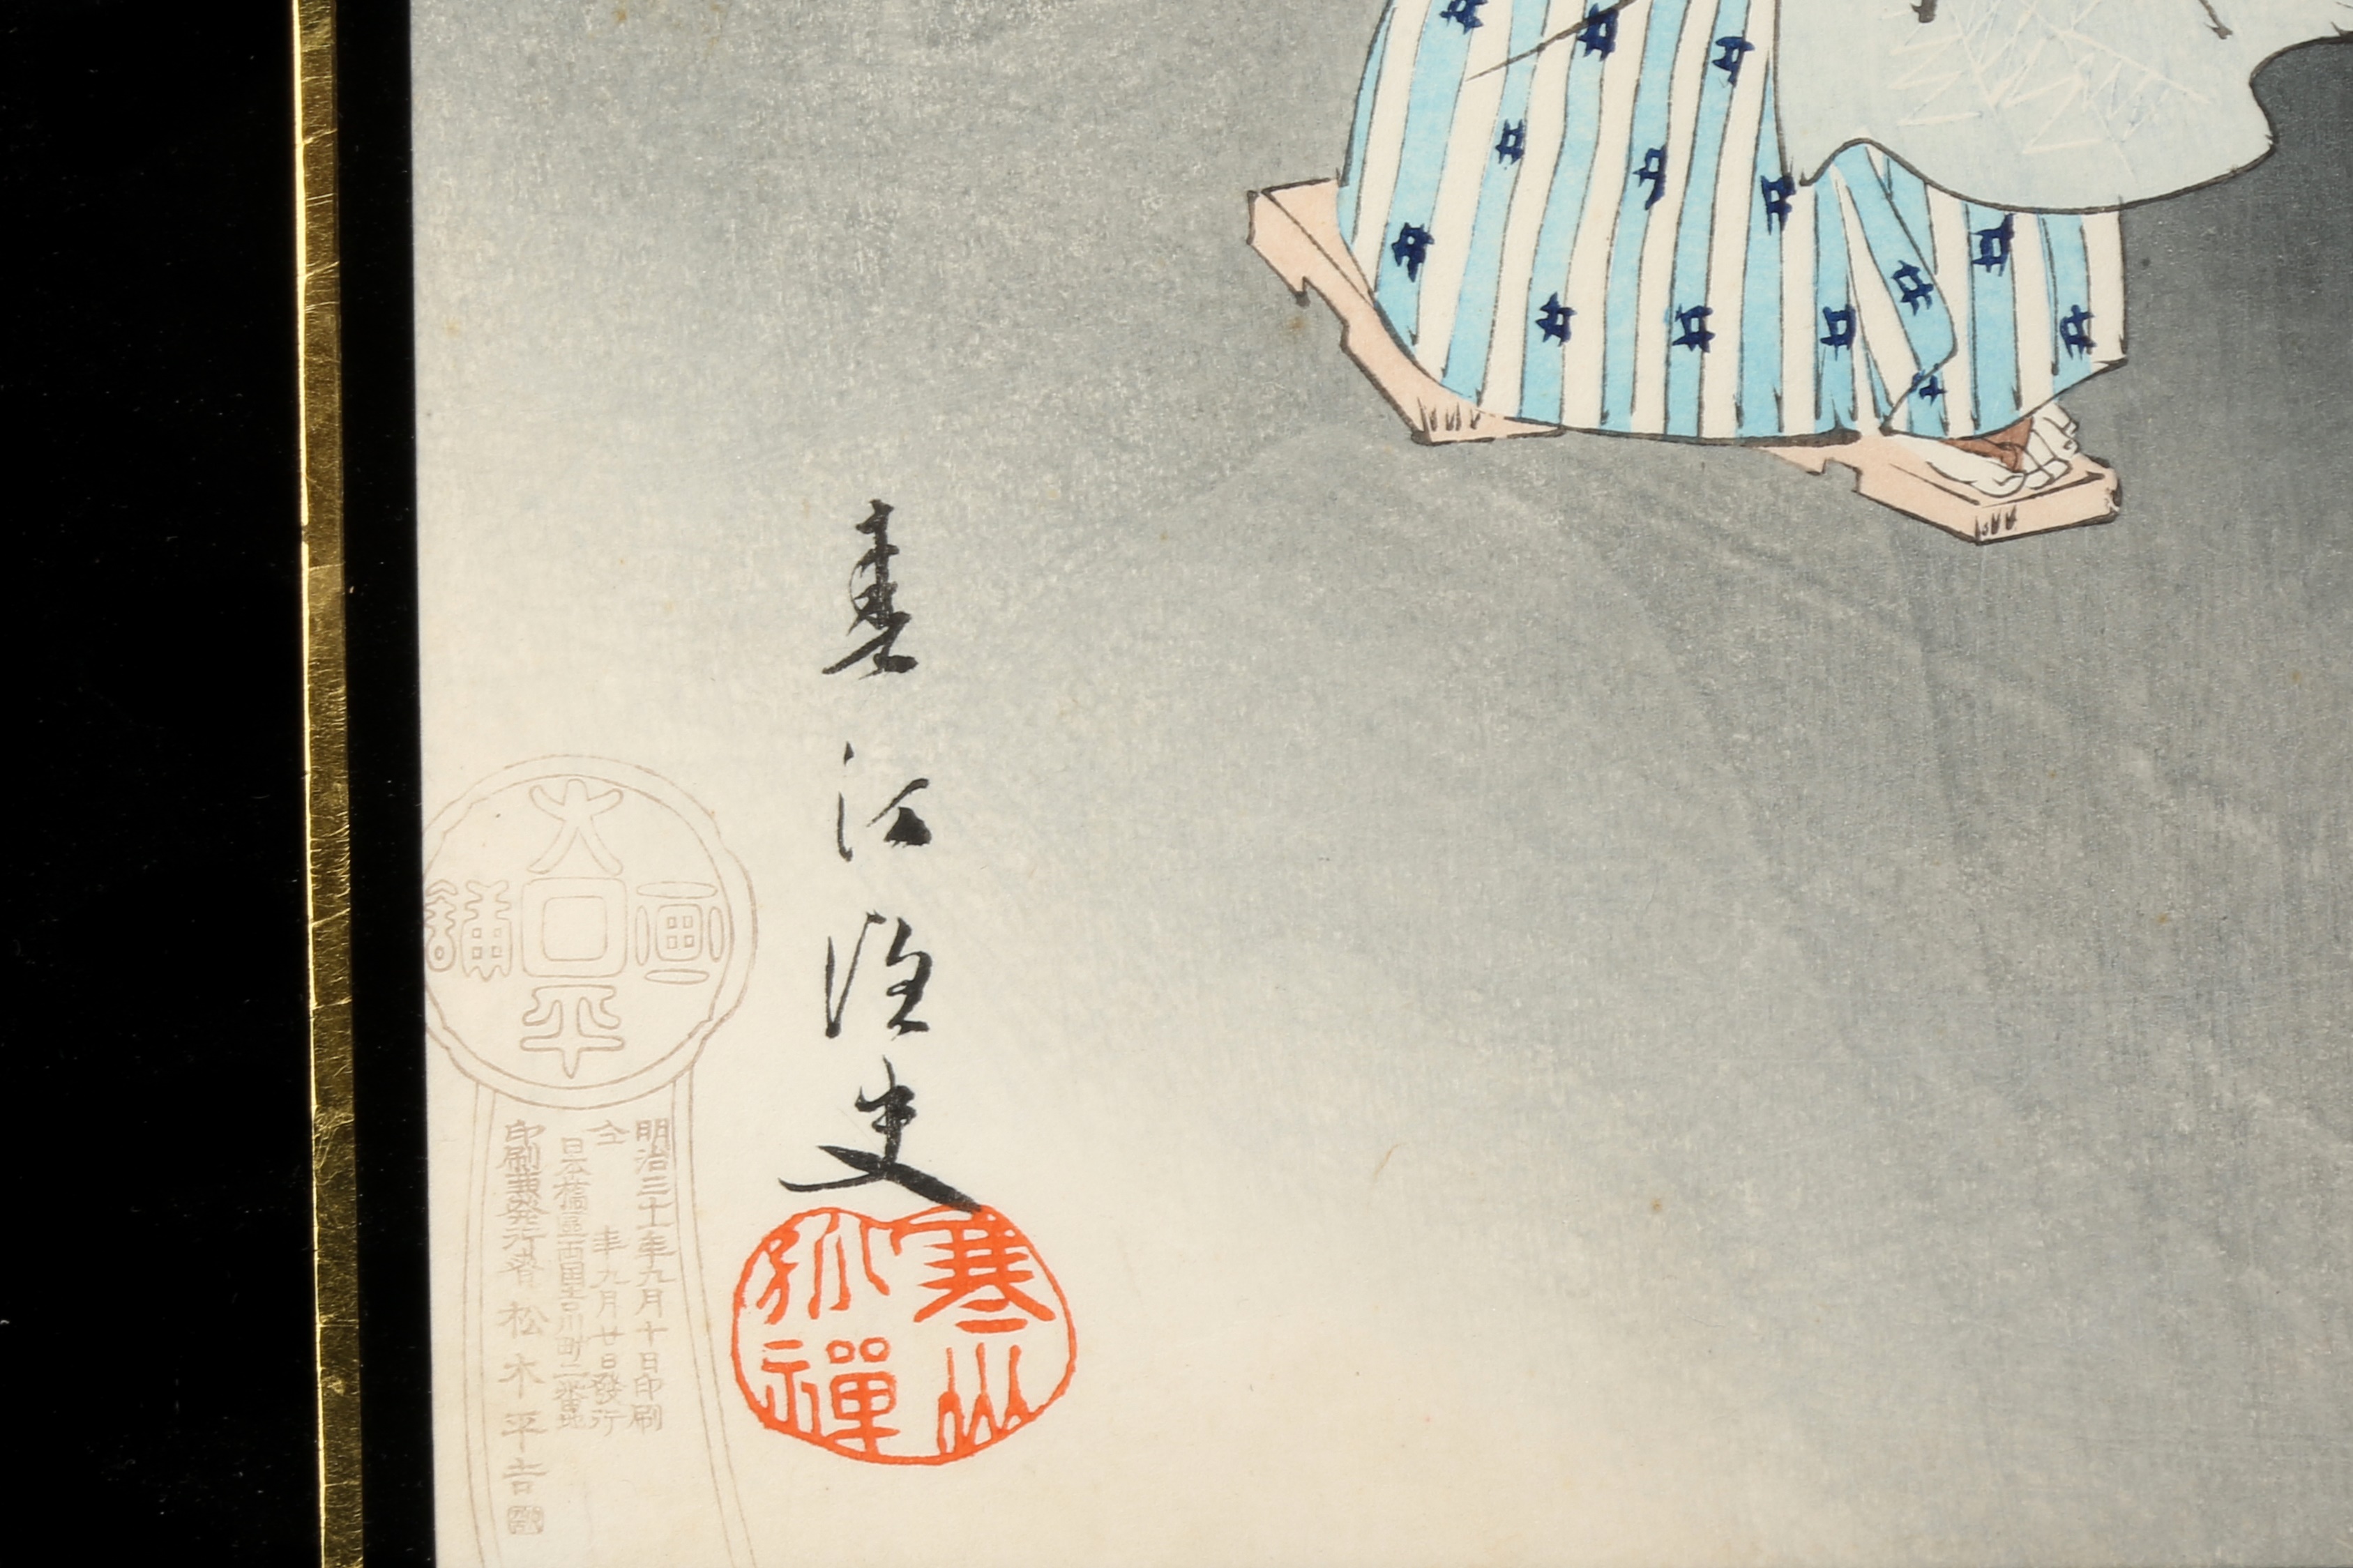 TSUKIOKA YOSHITOSHI (1797 – 1858), MIYAGAWA SHUNTEI (1873 – 1914) Two Japanese woodblock print tript - Image 3 of 23